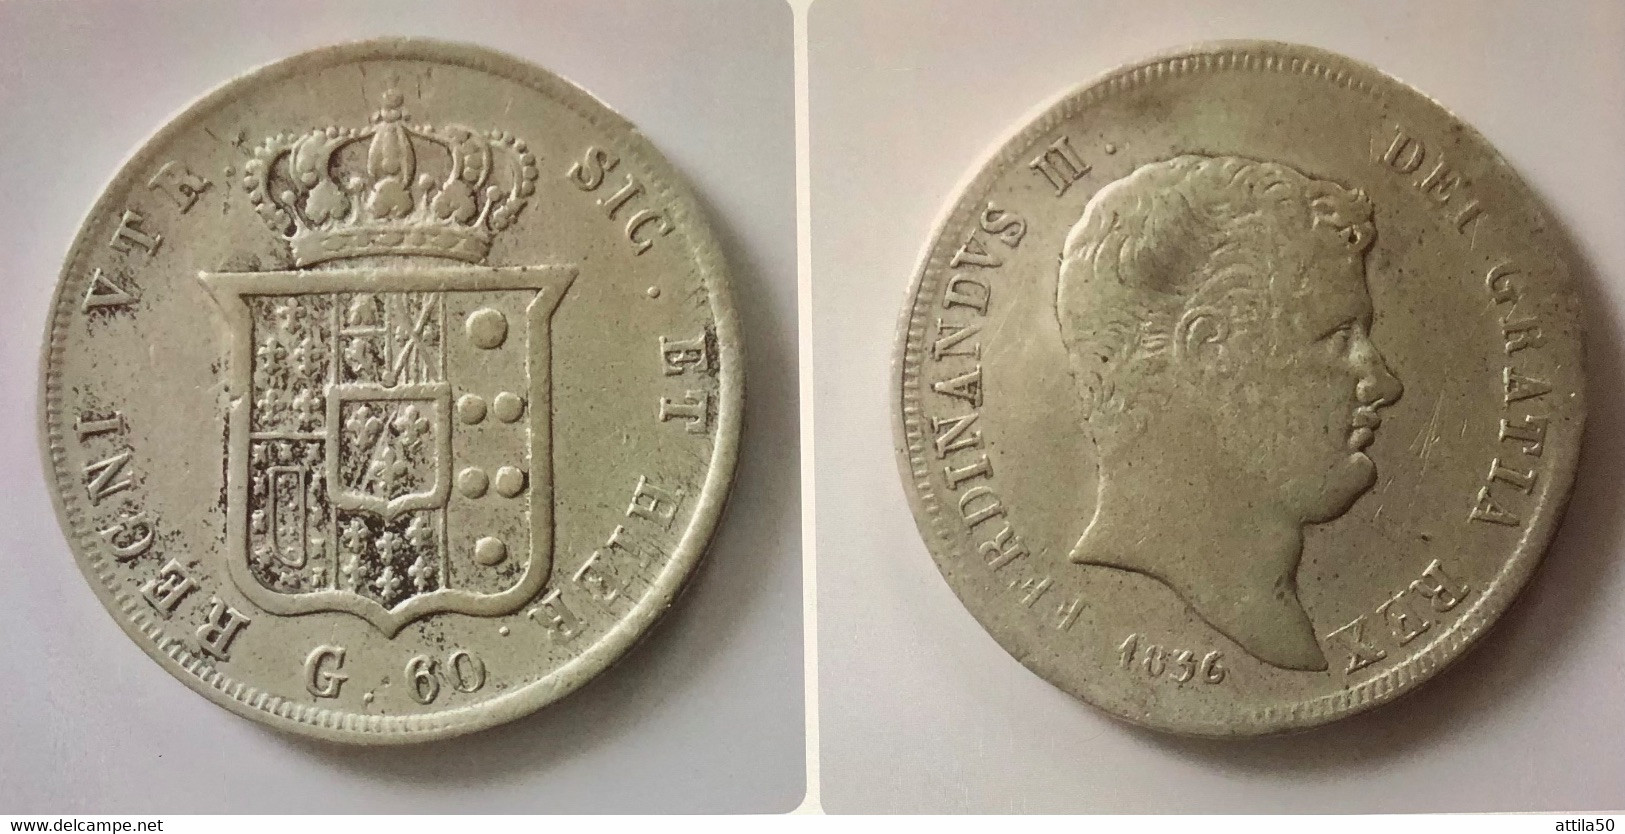 NAPOLI- FERDINANDO II DI BORBONE- 60 Grana - 1836 - Arg. 833% - Peso Gr.13,7 - Diametro Mm.31. BB. - Two Sicilia